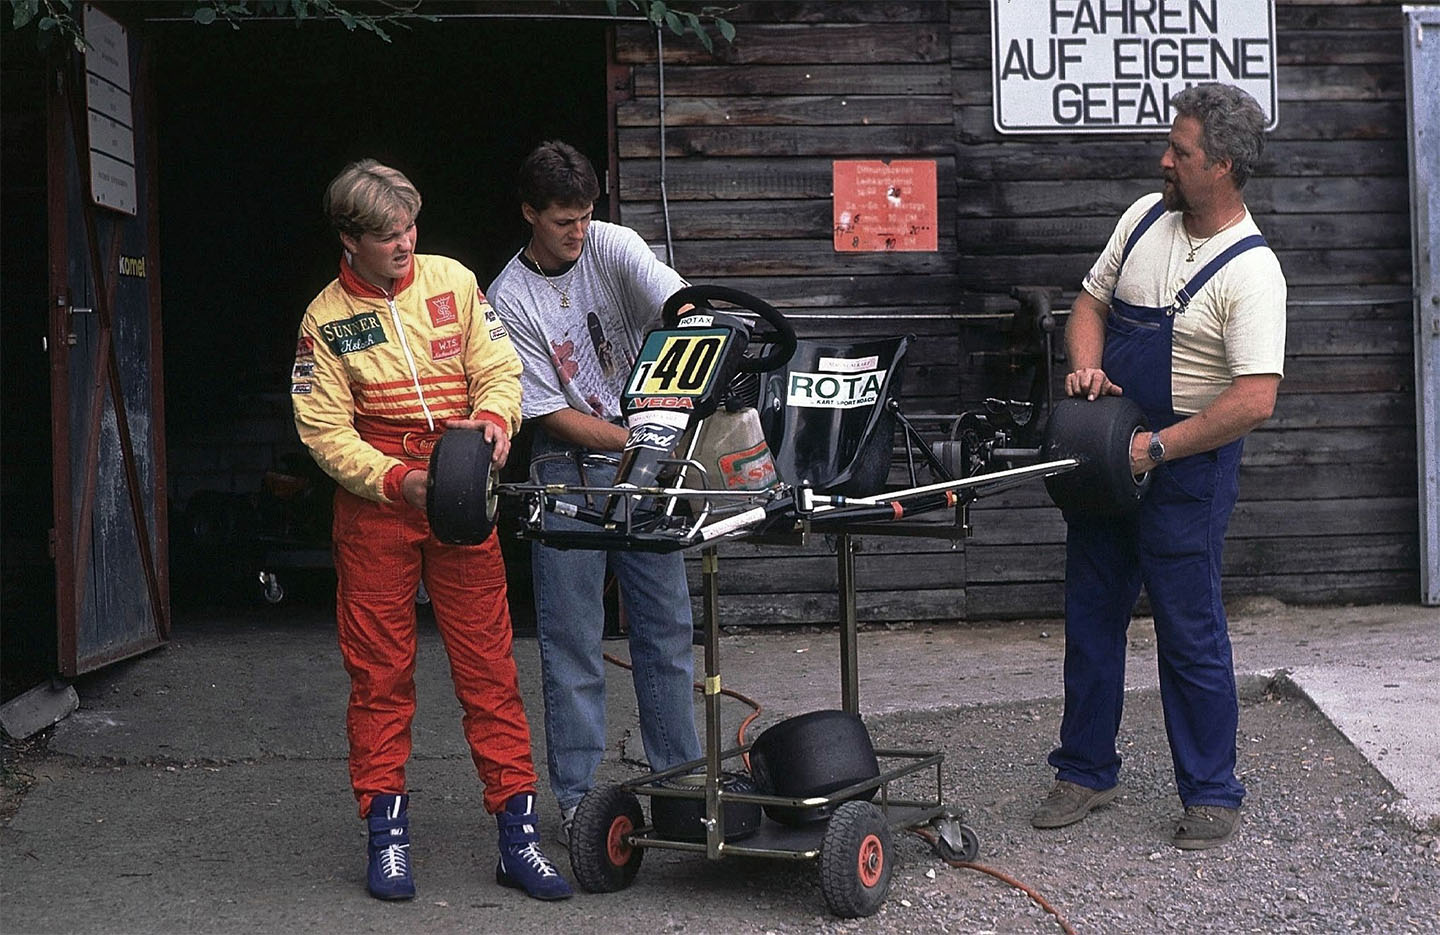 Михаэль Шумахер (в центре), Ральф Шумахер (слева) и отец Рольф собирают картинг